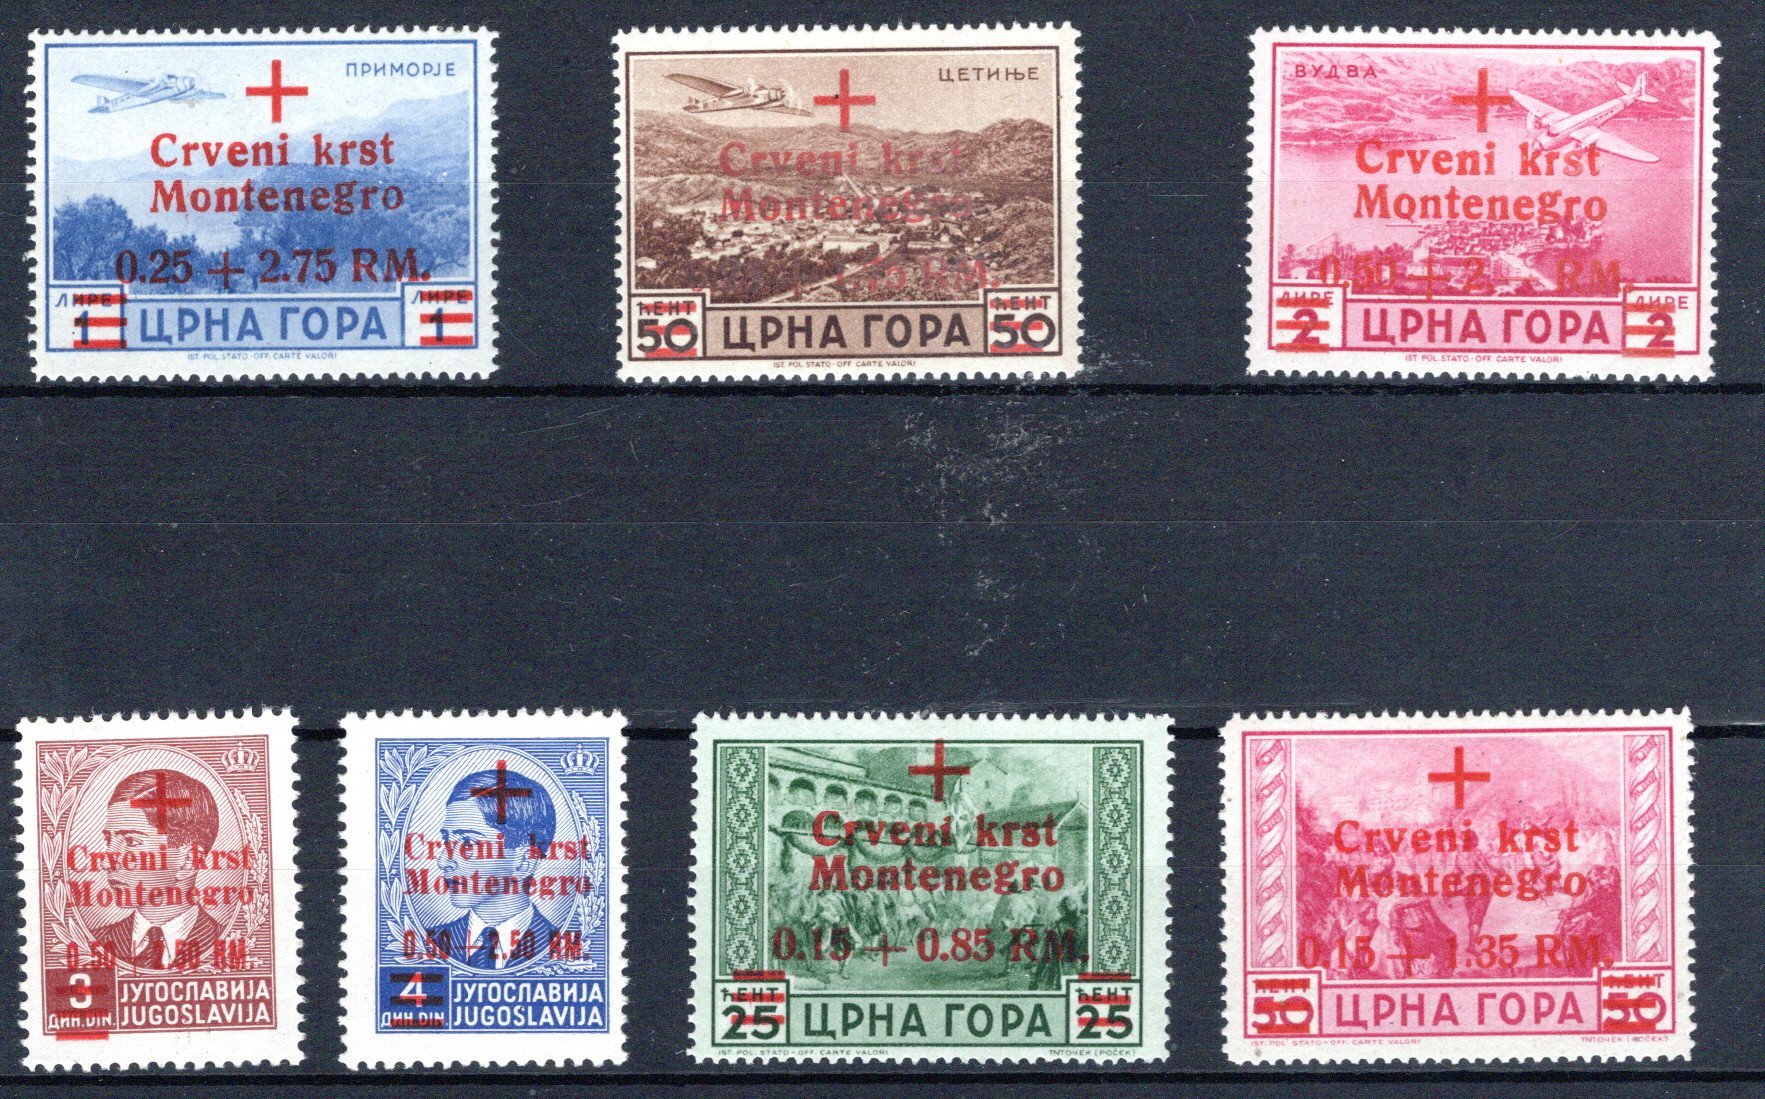 Lot 3859 - germany WWII Occupation Montenegro -  Georg Bühler Briefmarken Auktionen GmbH Georg Bühler 336 auction